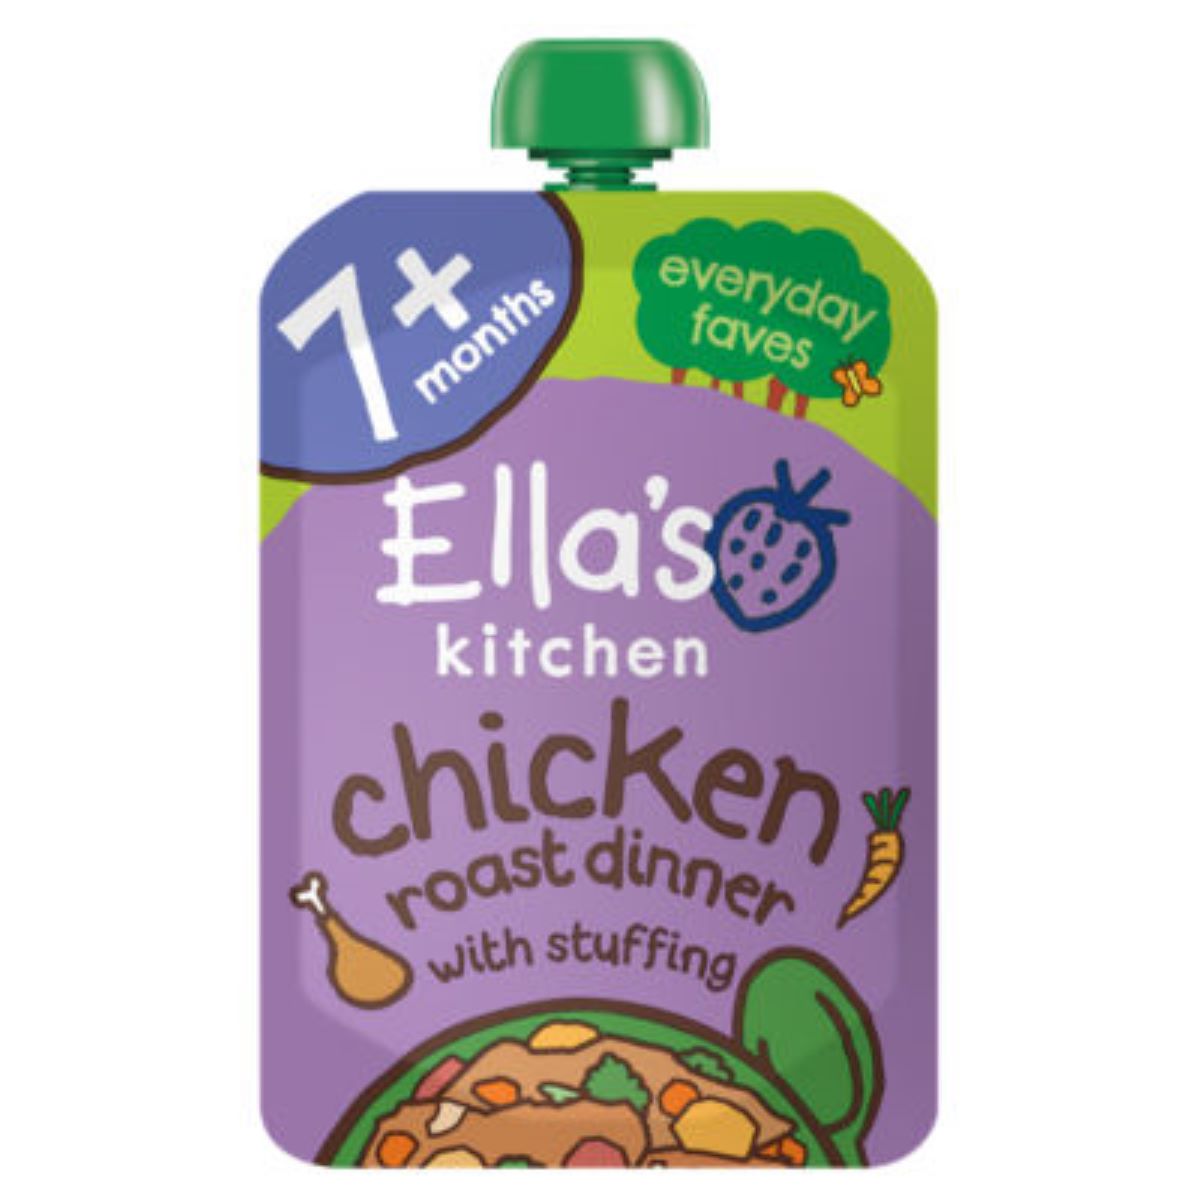 Ella's Kitchen Chicken Roast Dinner 130g